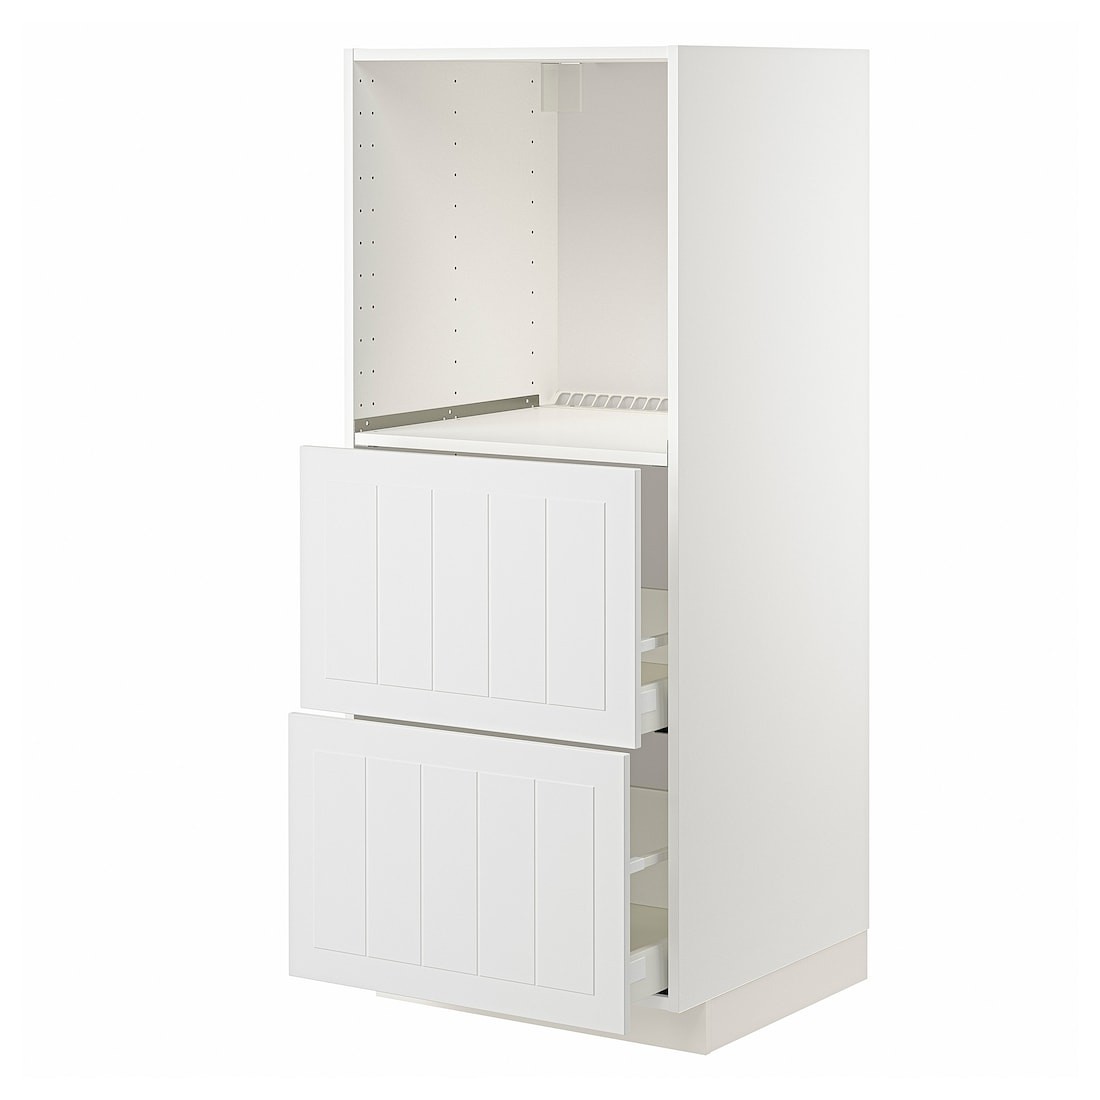 METOD МЕТОД / MAXIMERA МАКСИМЕРА Высокий шкаф с 2 ящиками для духовки, белый / Stensund белый, 60x60x140 см